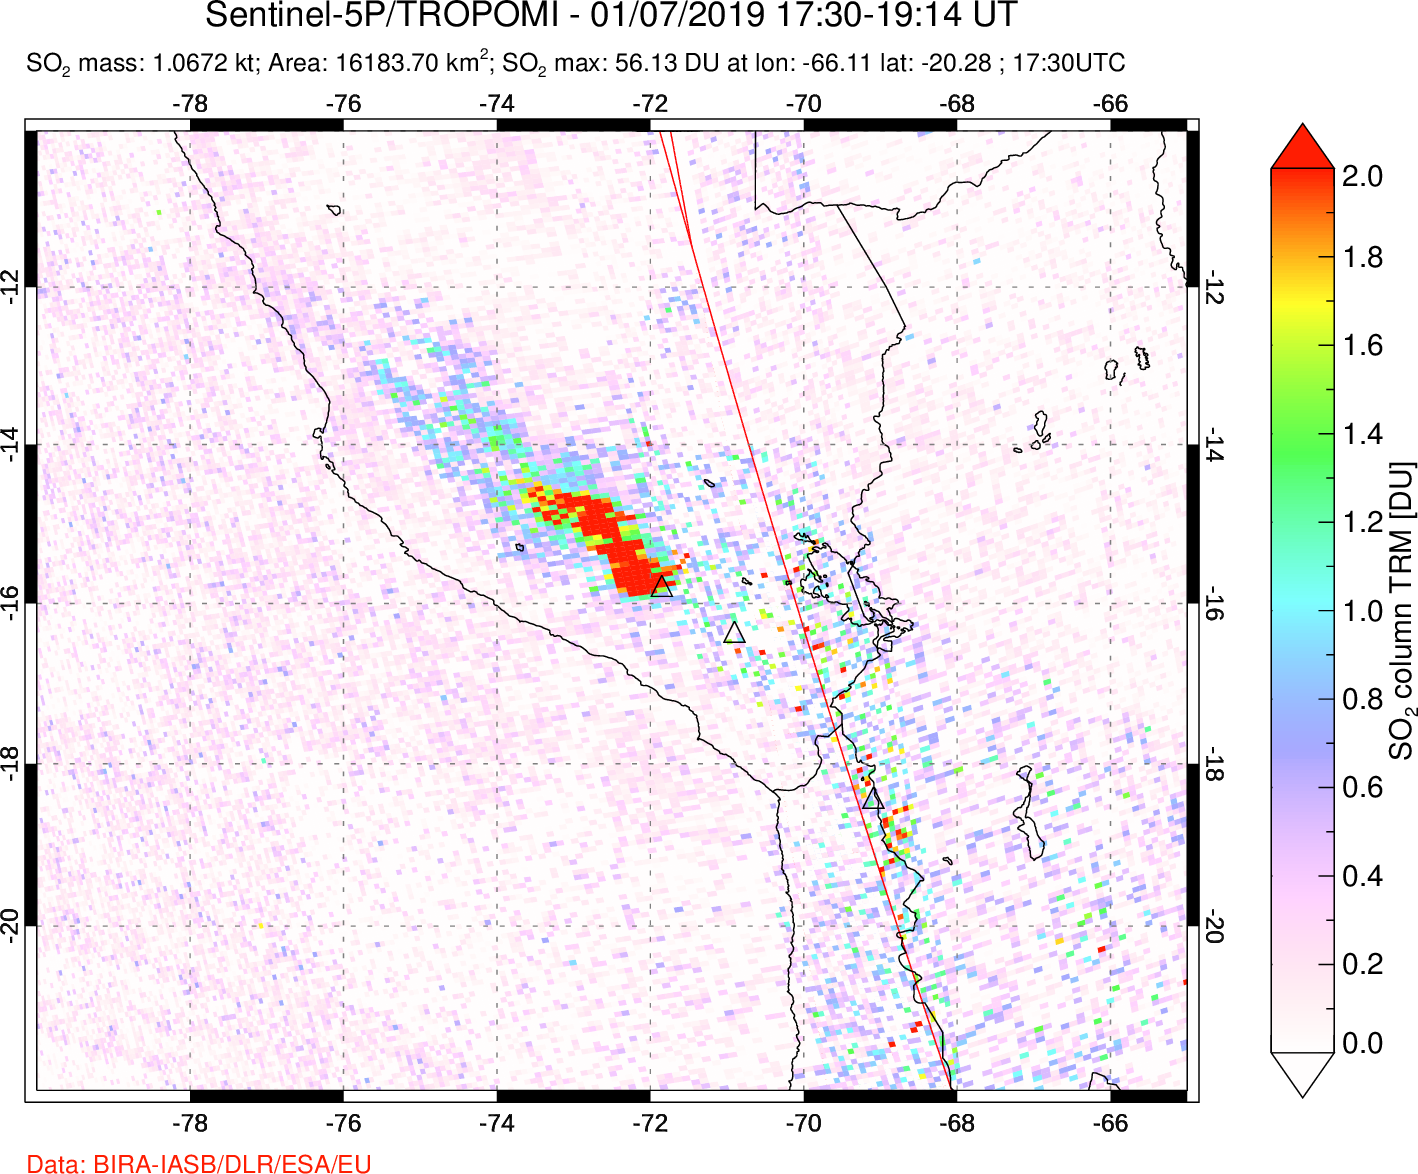 A sulfur dioxide image over Peru on Jan 07, 2019.